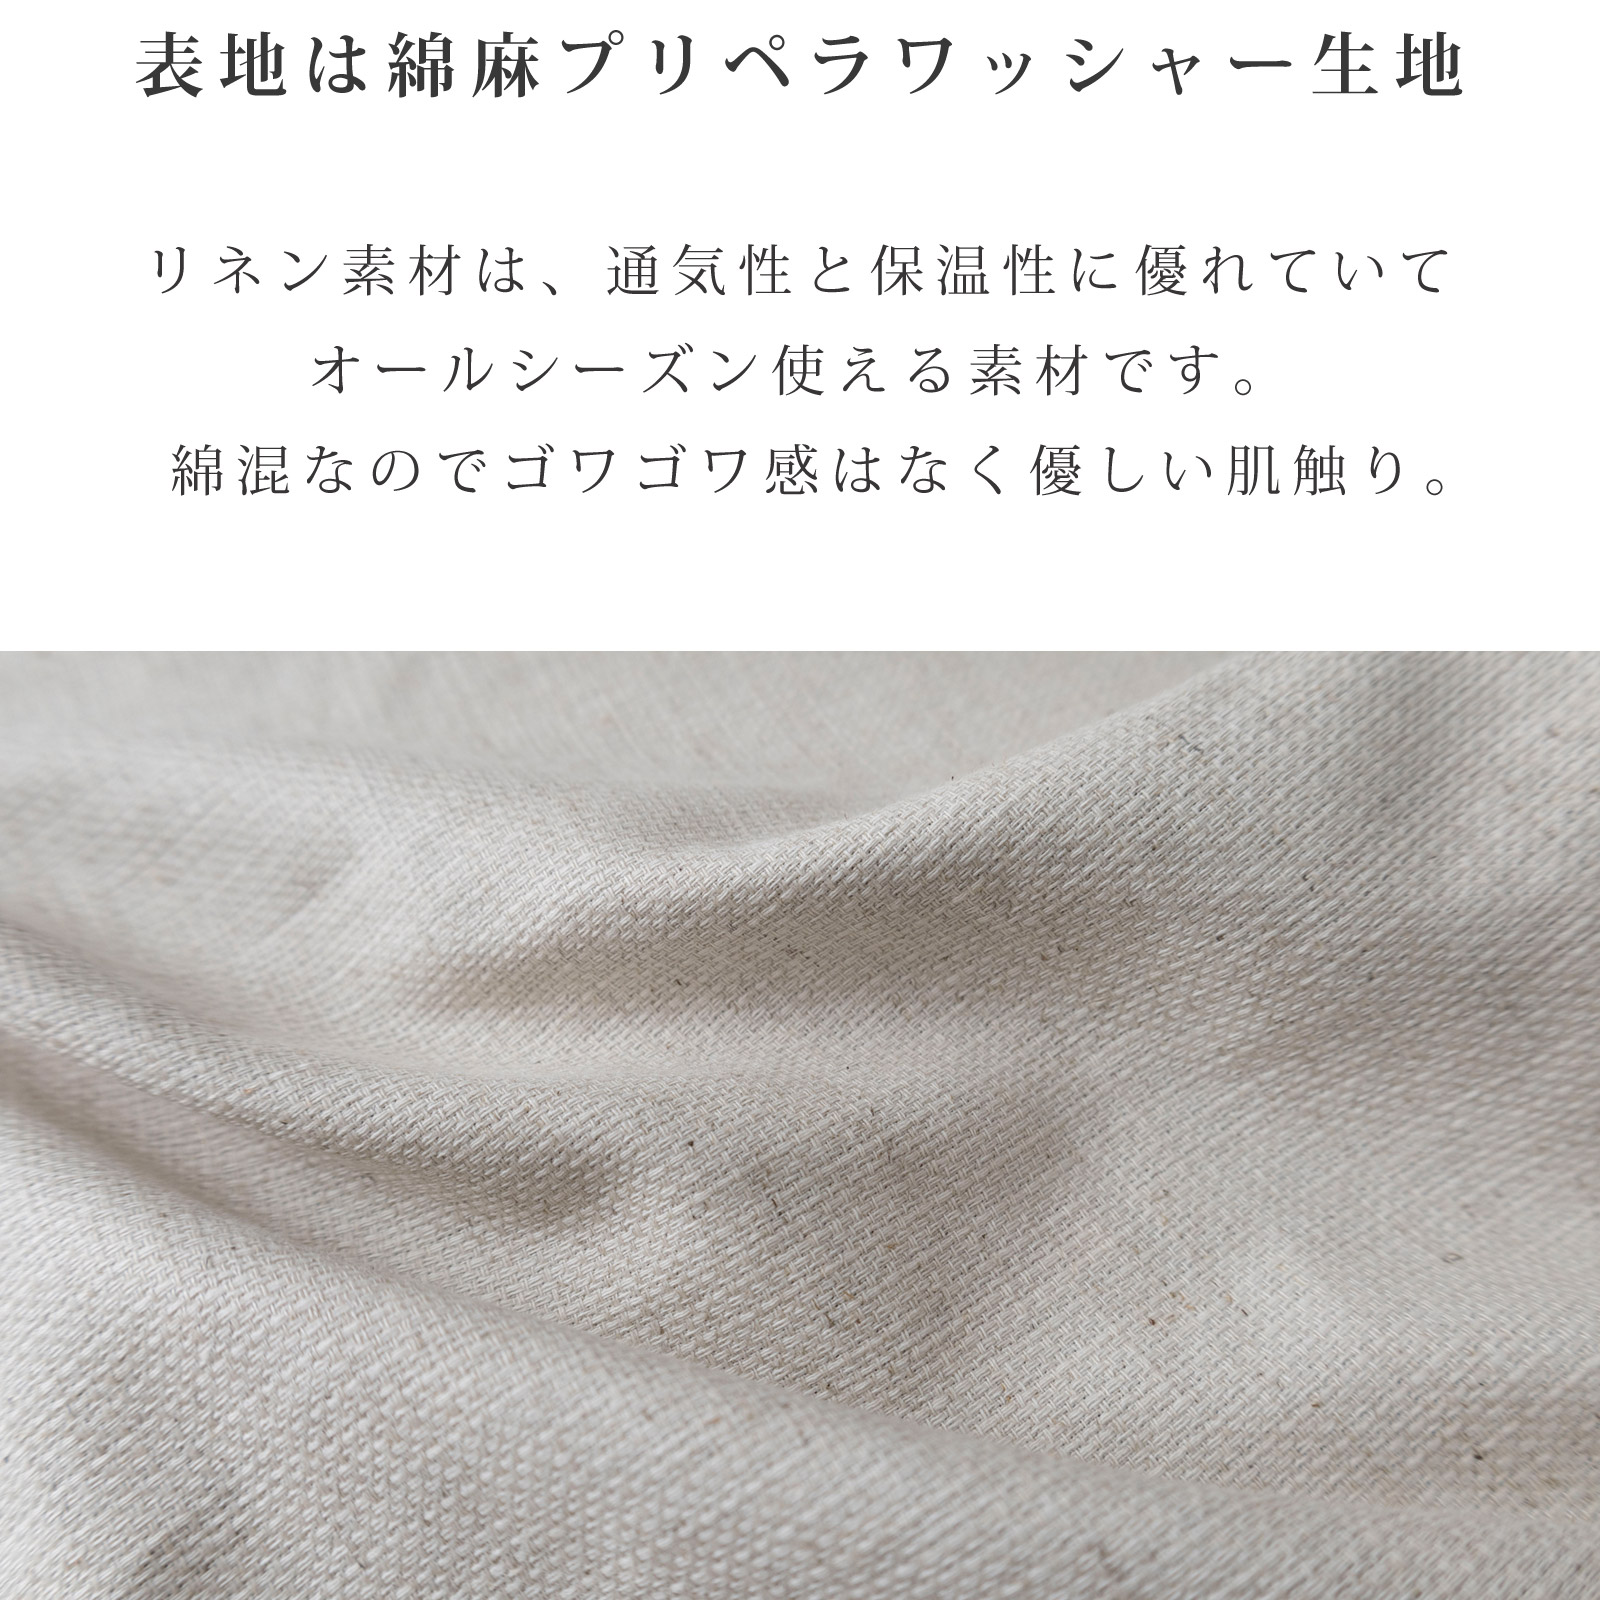 日本製 キャリー用マット クレート用マット 通気性 保温性